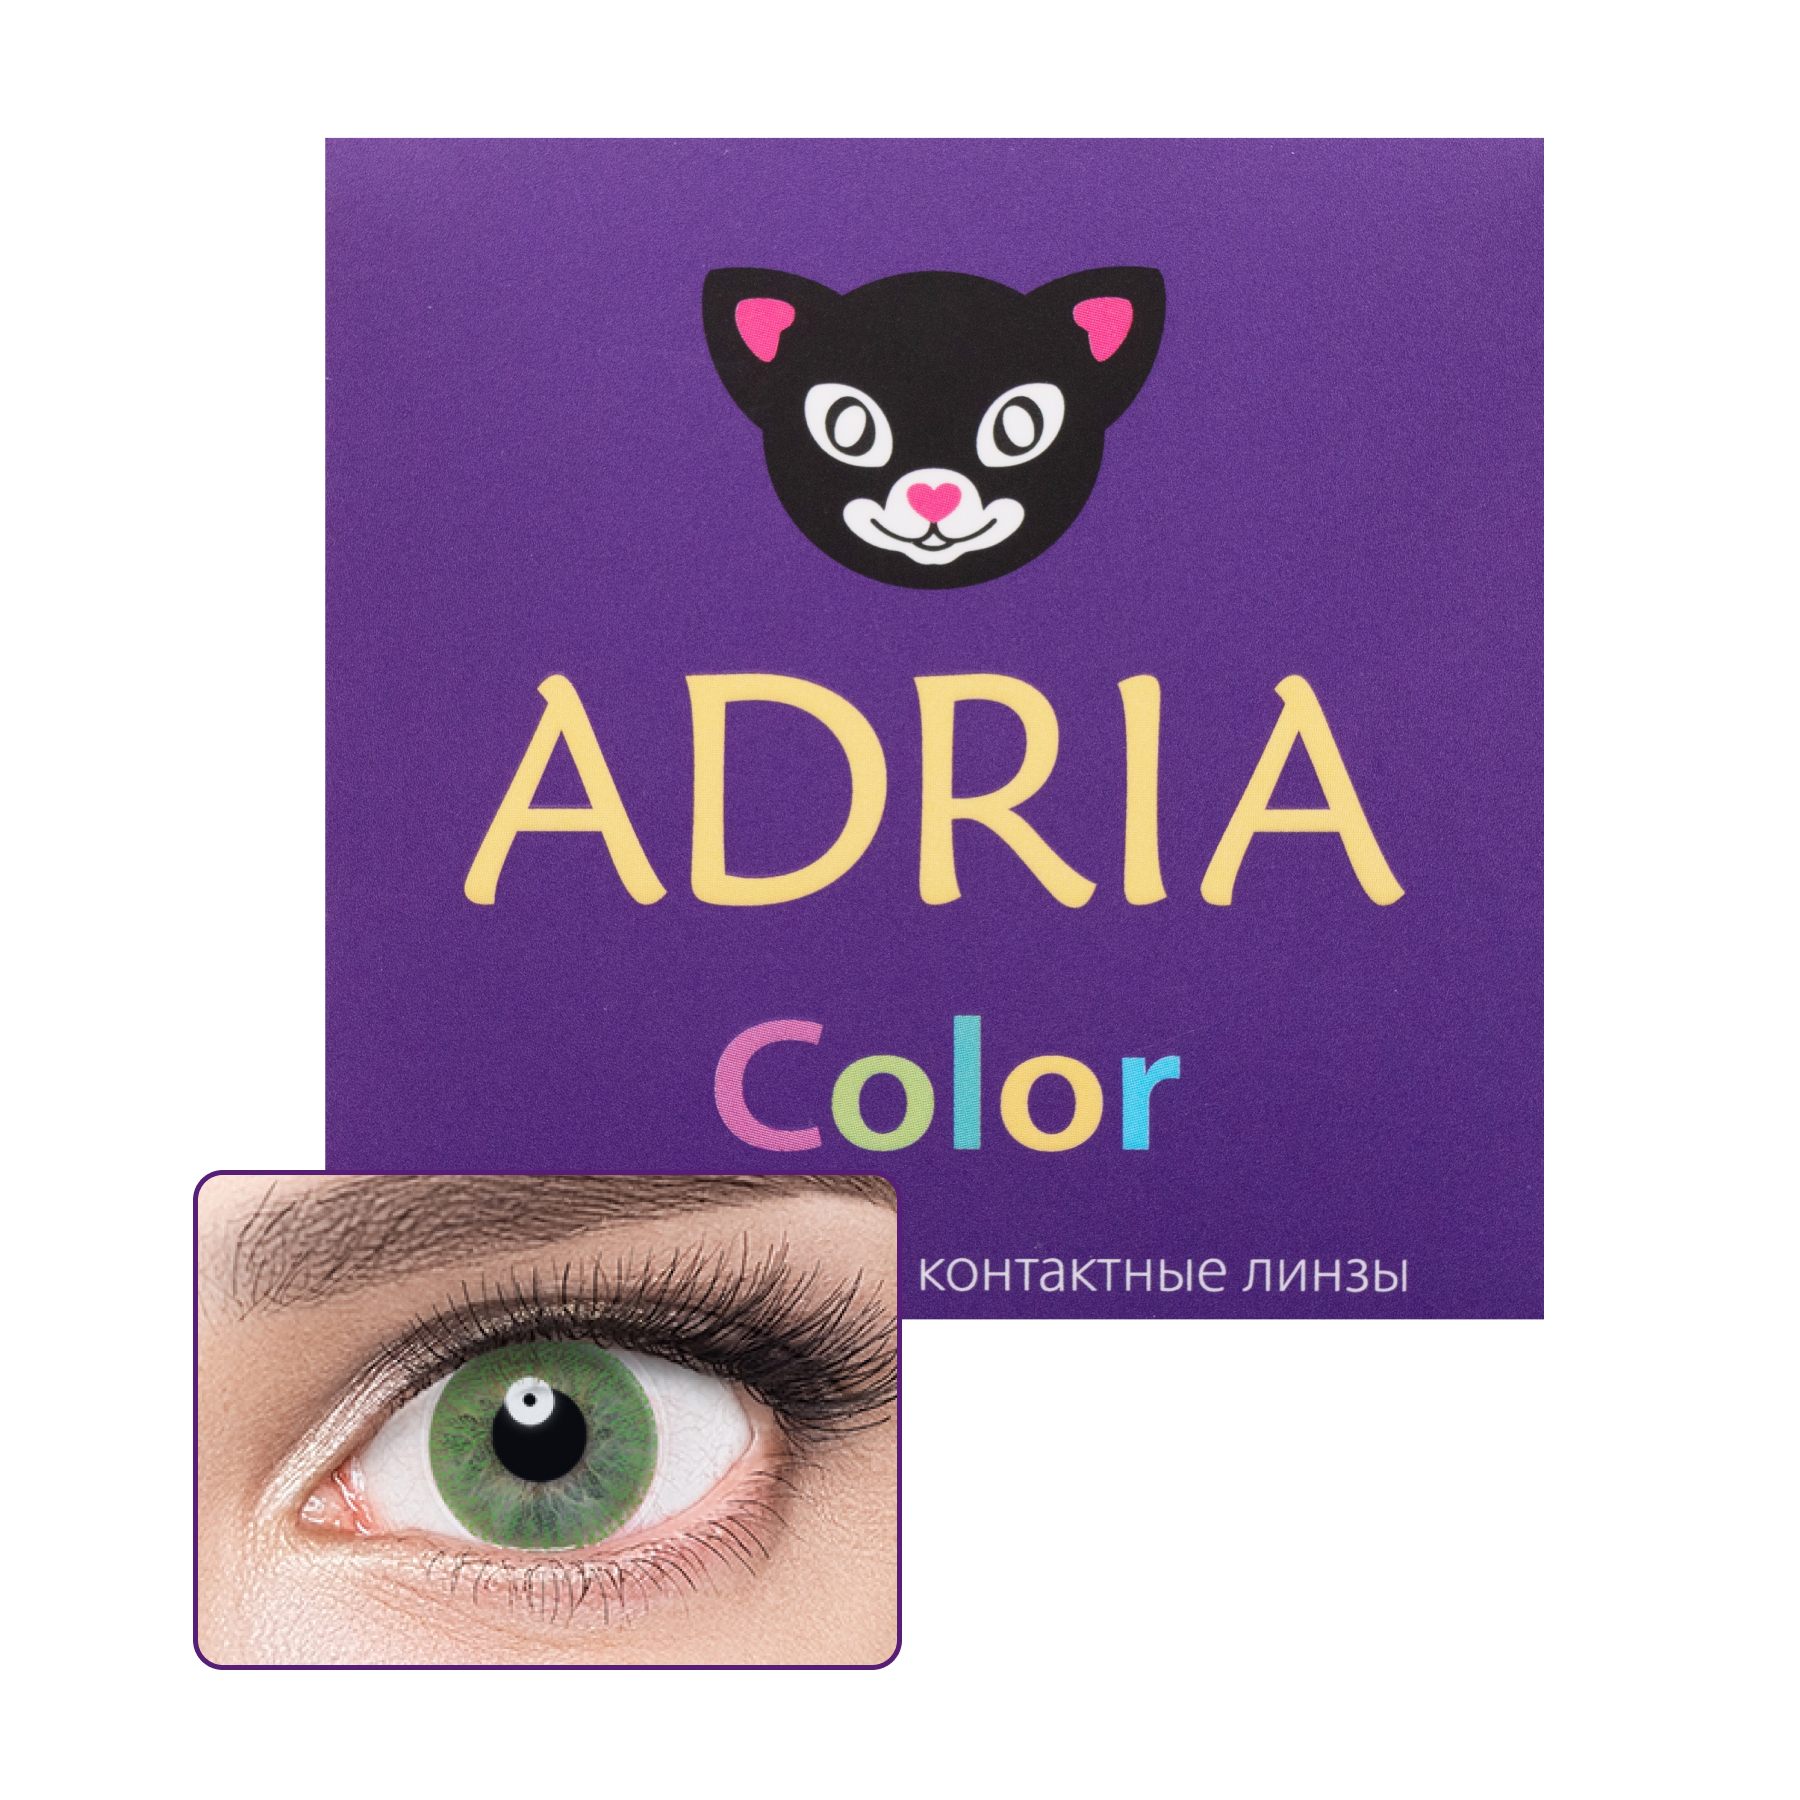 Купить COLOR 1 TONE 2 линзы, Контактные линзы Adria Color 1 Tone 8, 6 -0, 00 GREEN 2 шт.